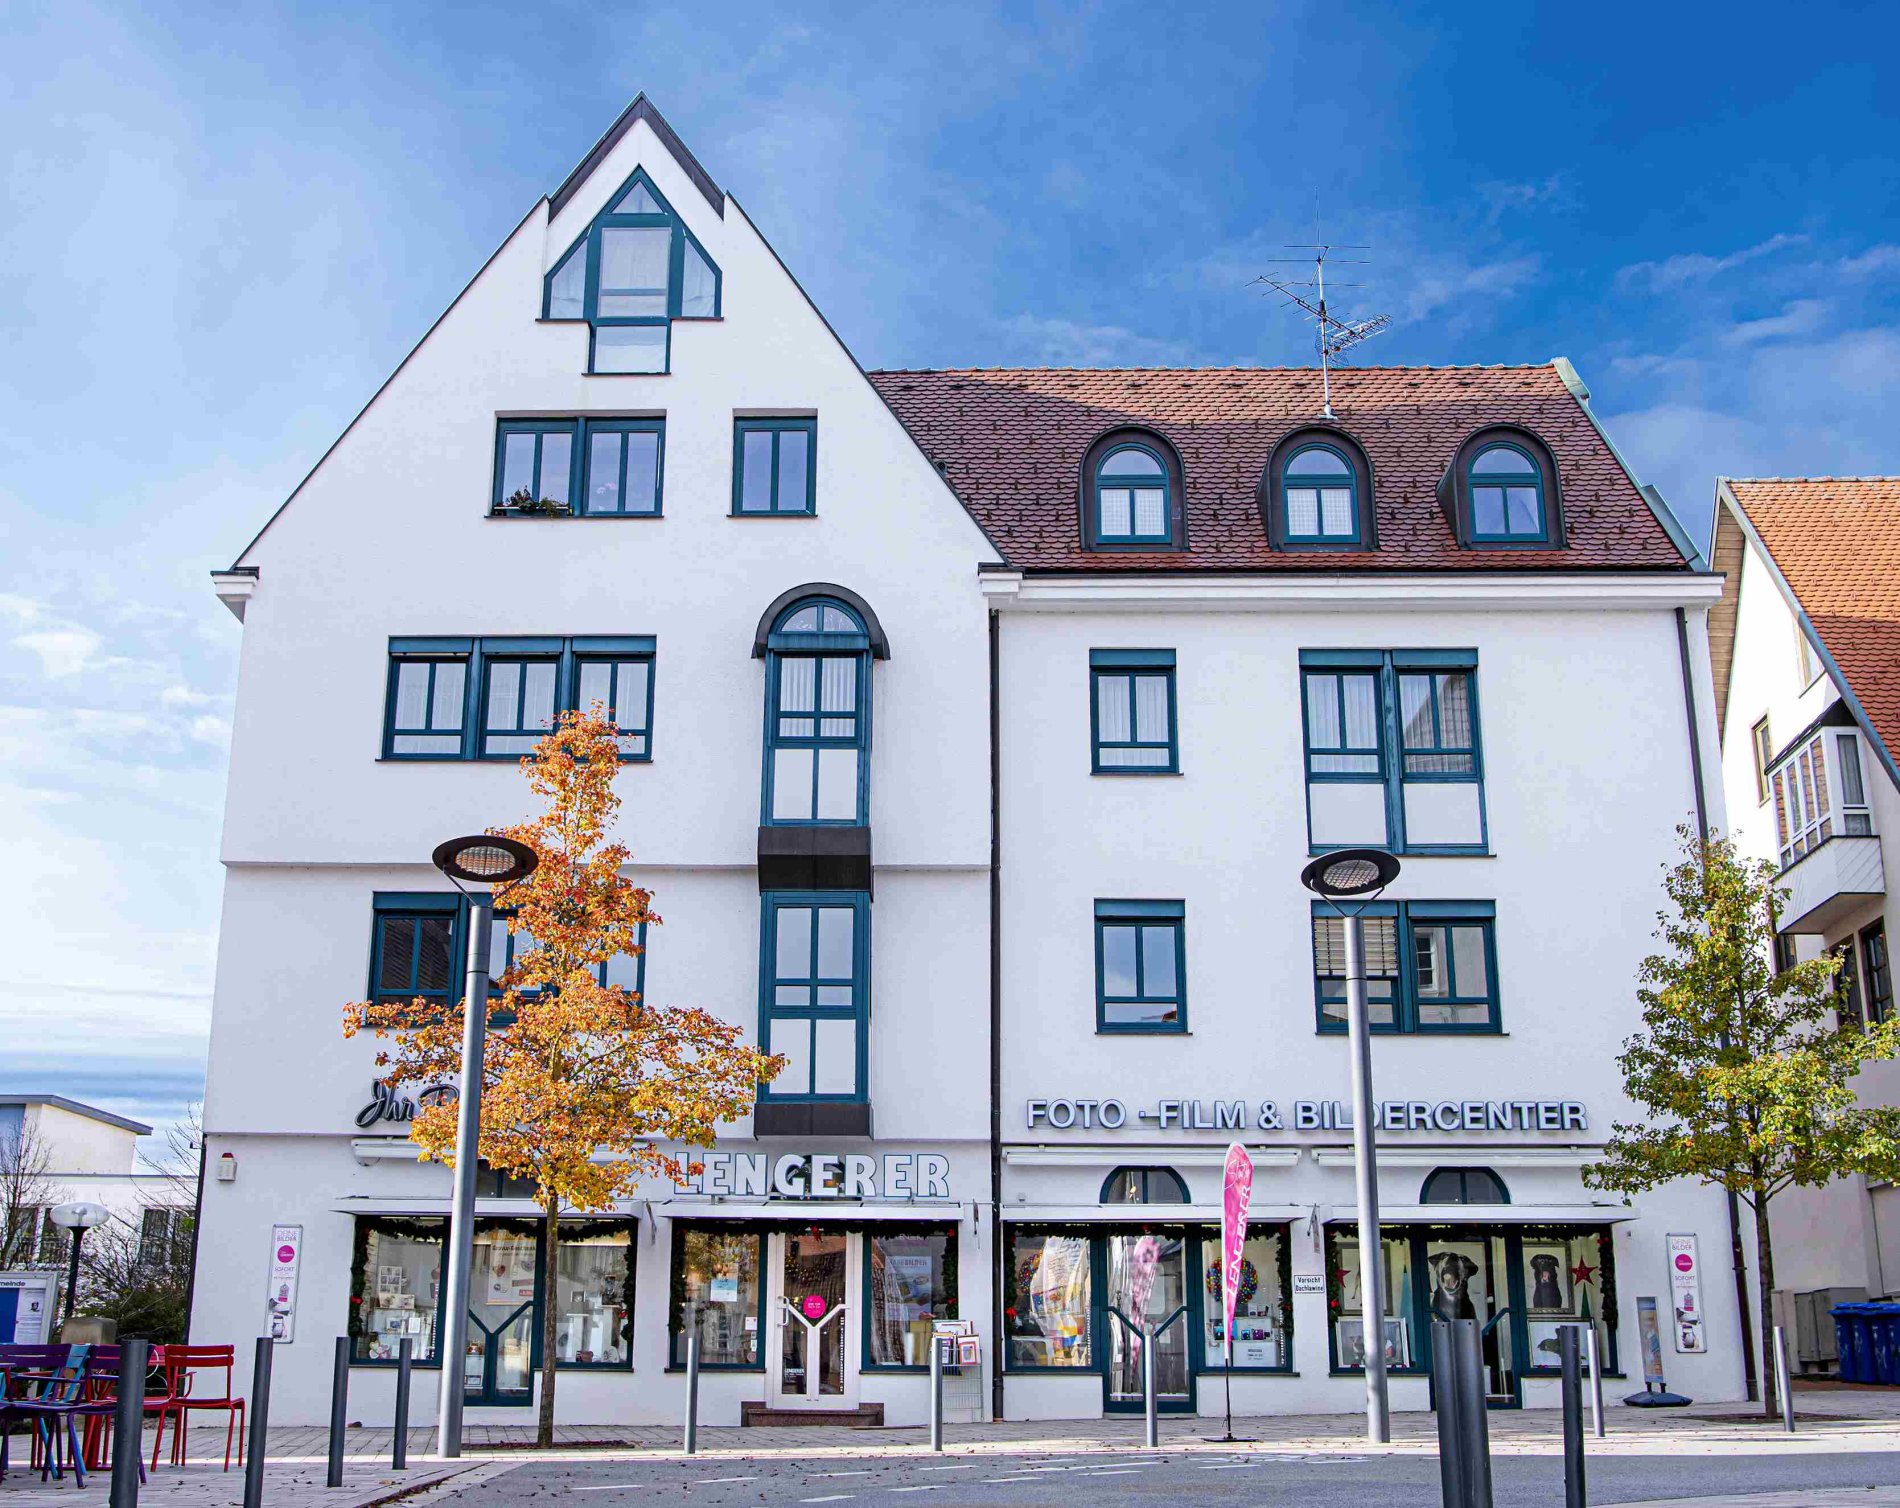 Geschäfte in Albstadt: Fotostudio Lengerer in Albstadt-Ebingen